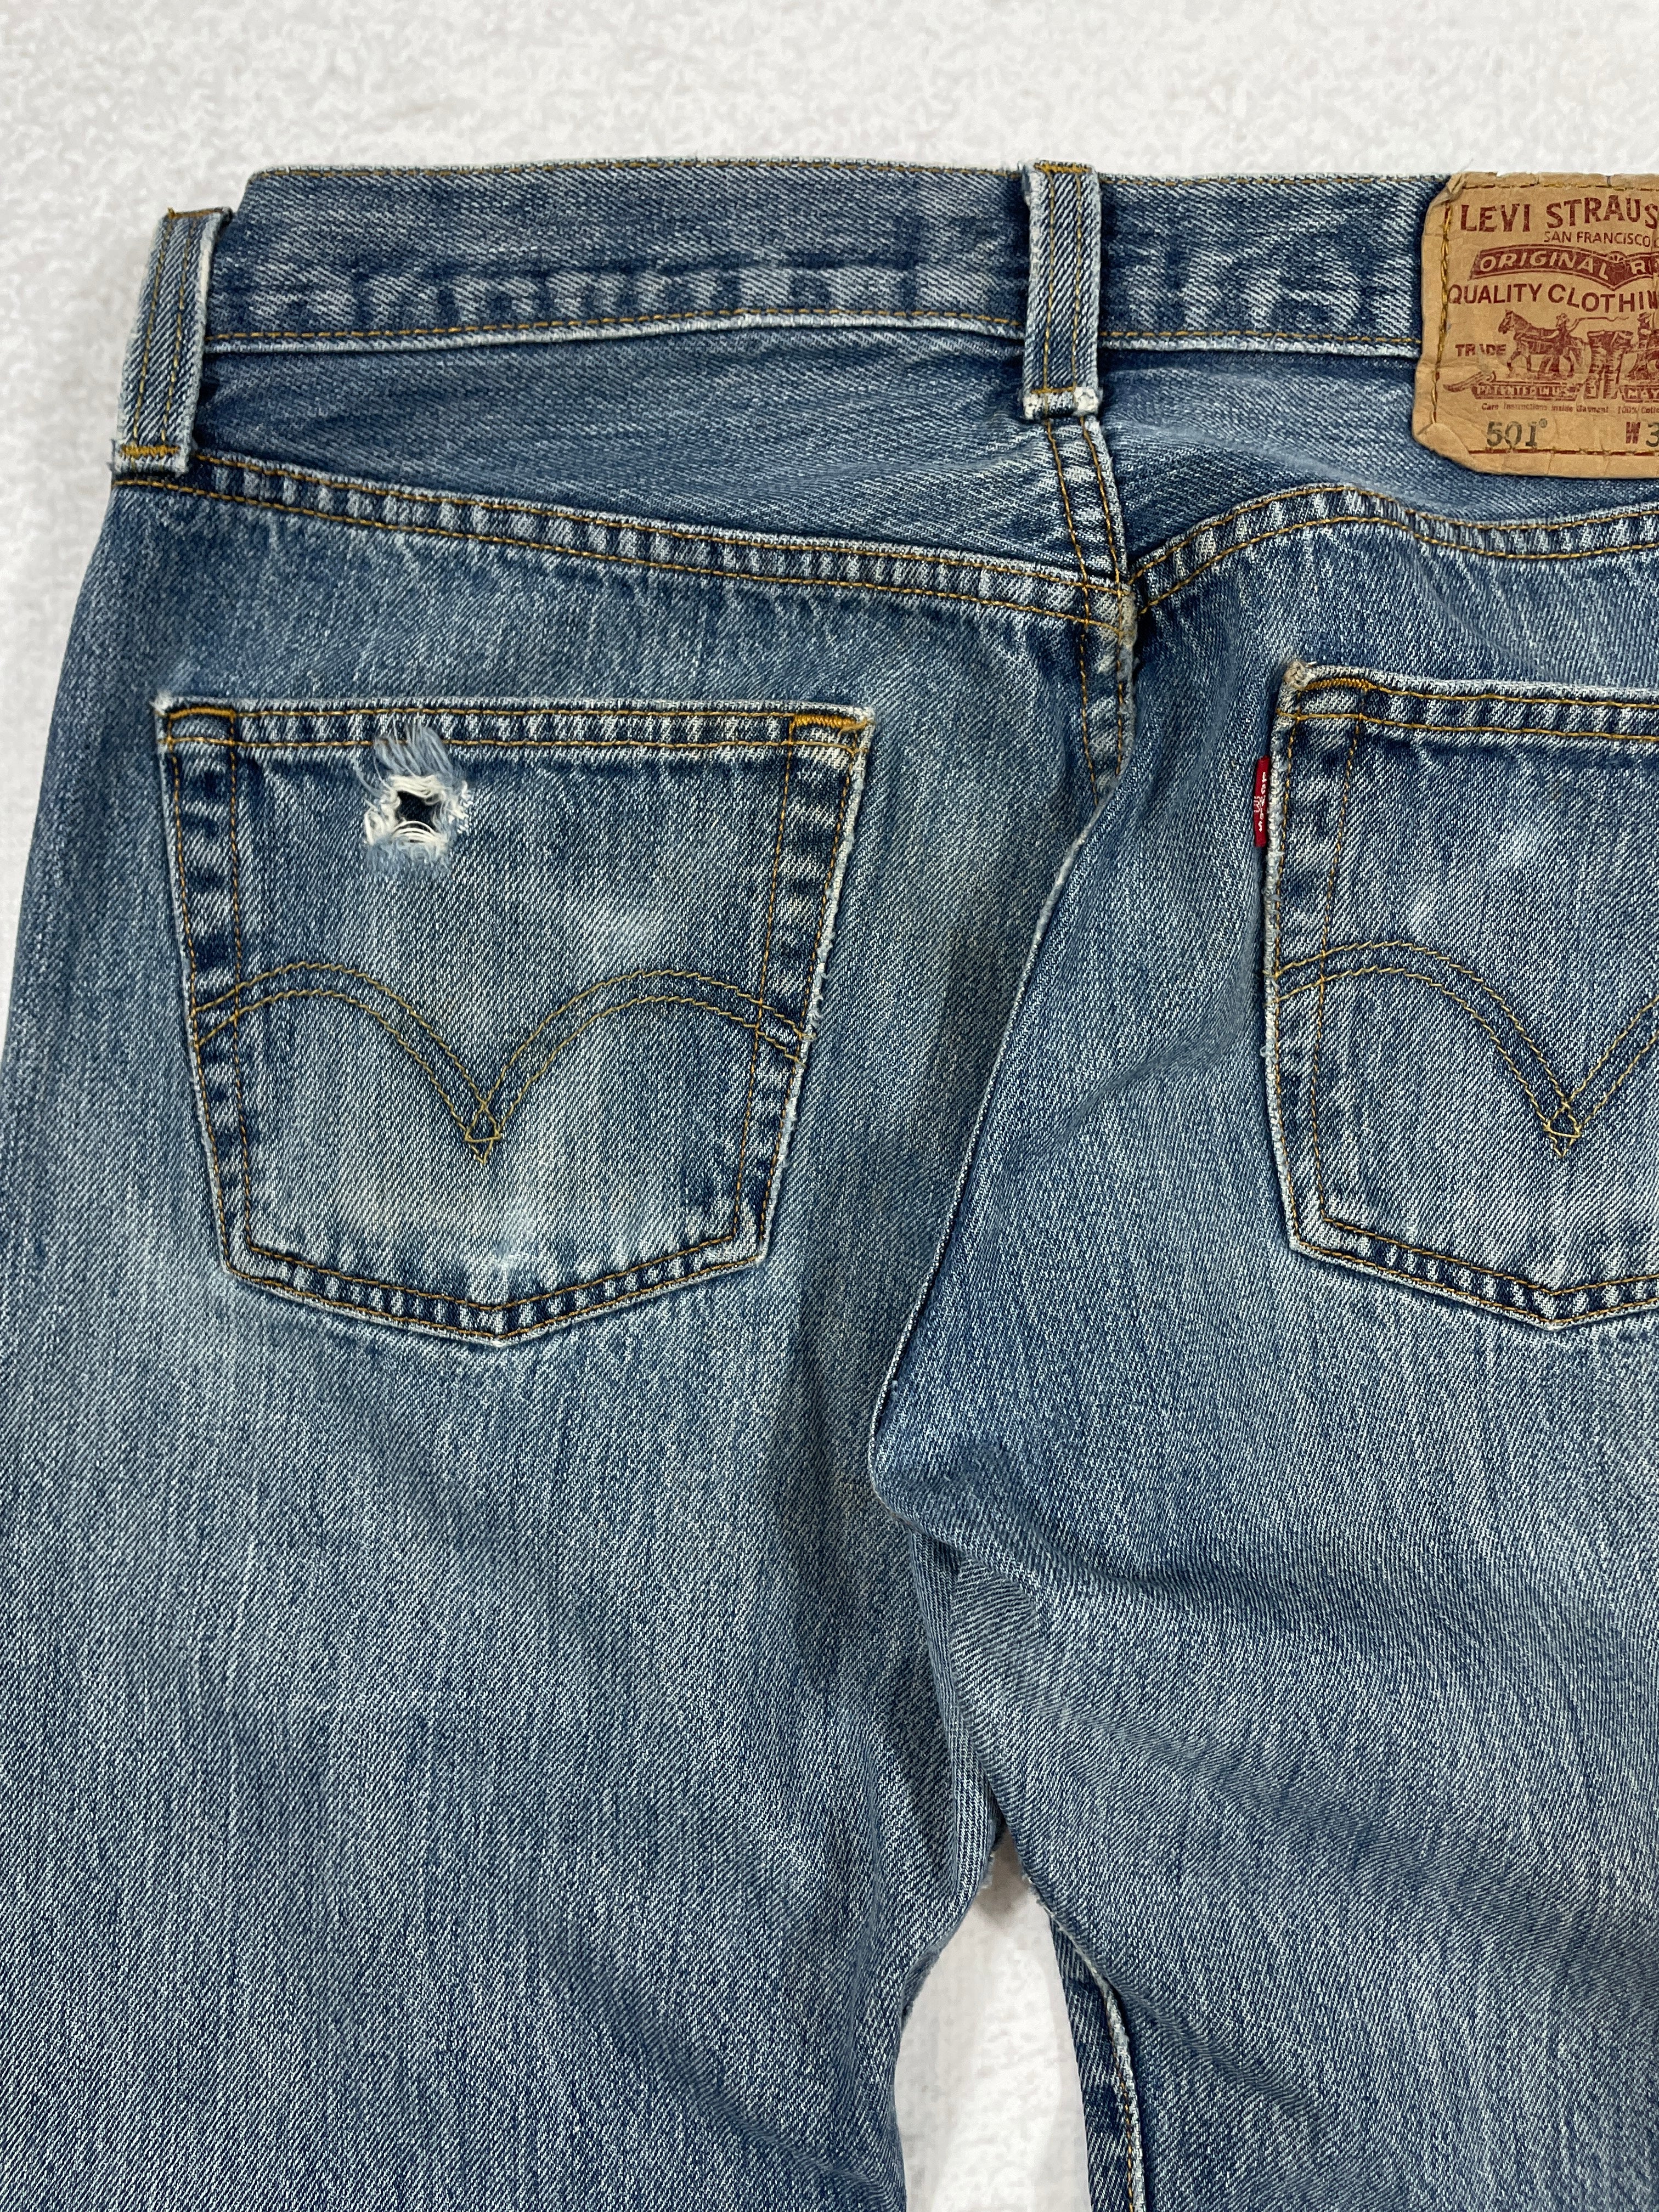 Vintage Levis 501 Jeans  - Men's 30Wx30L